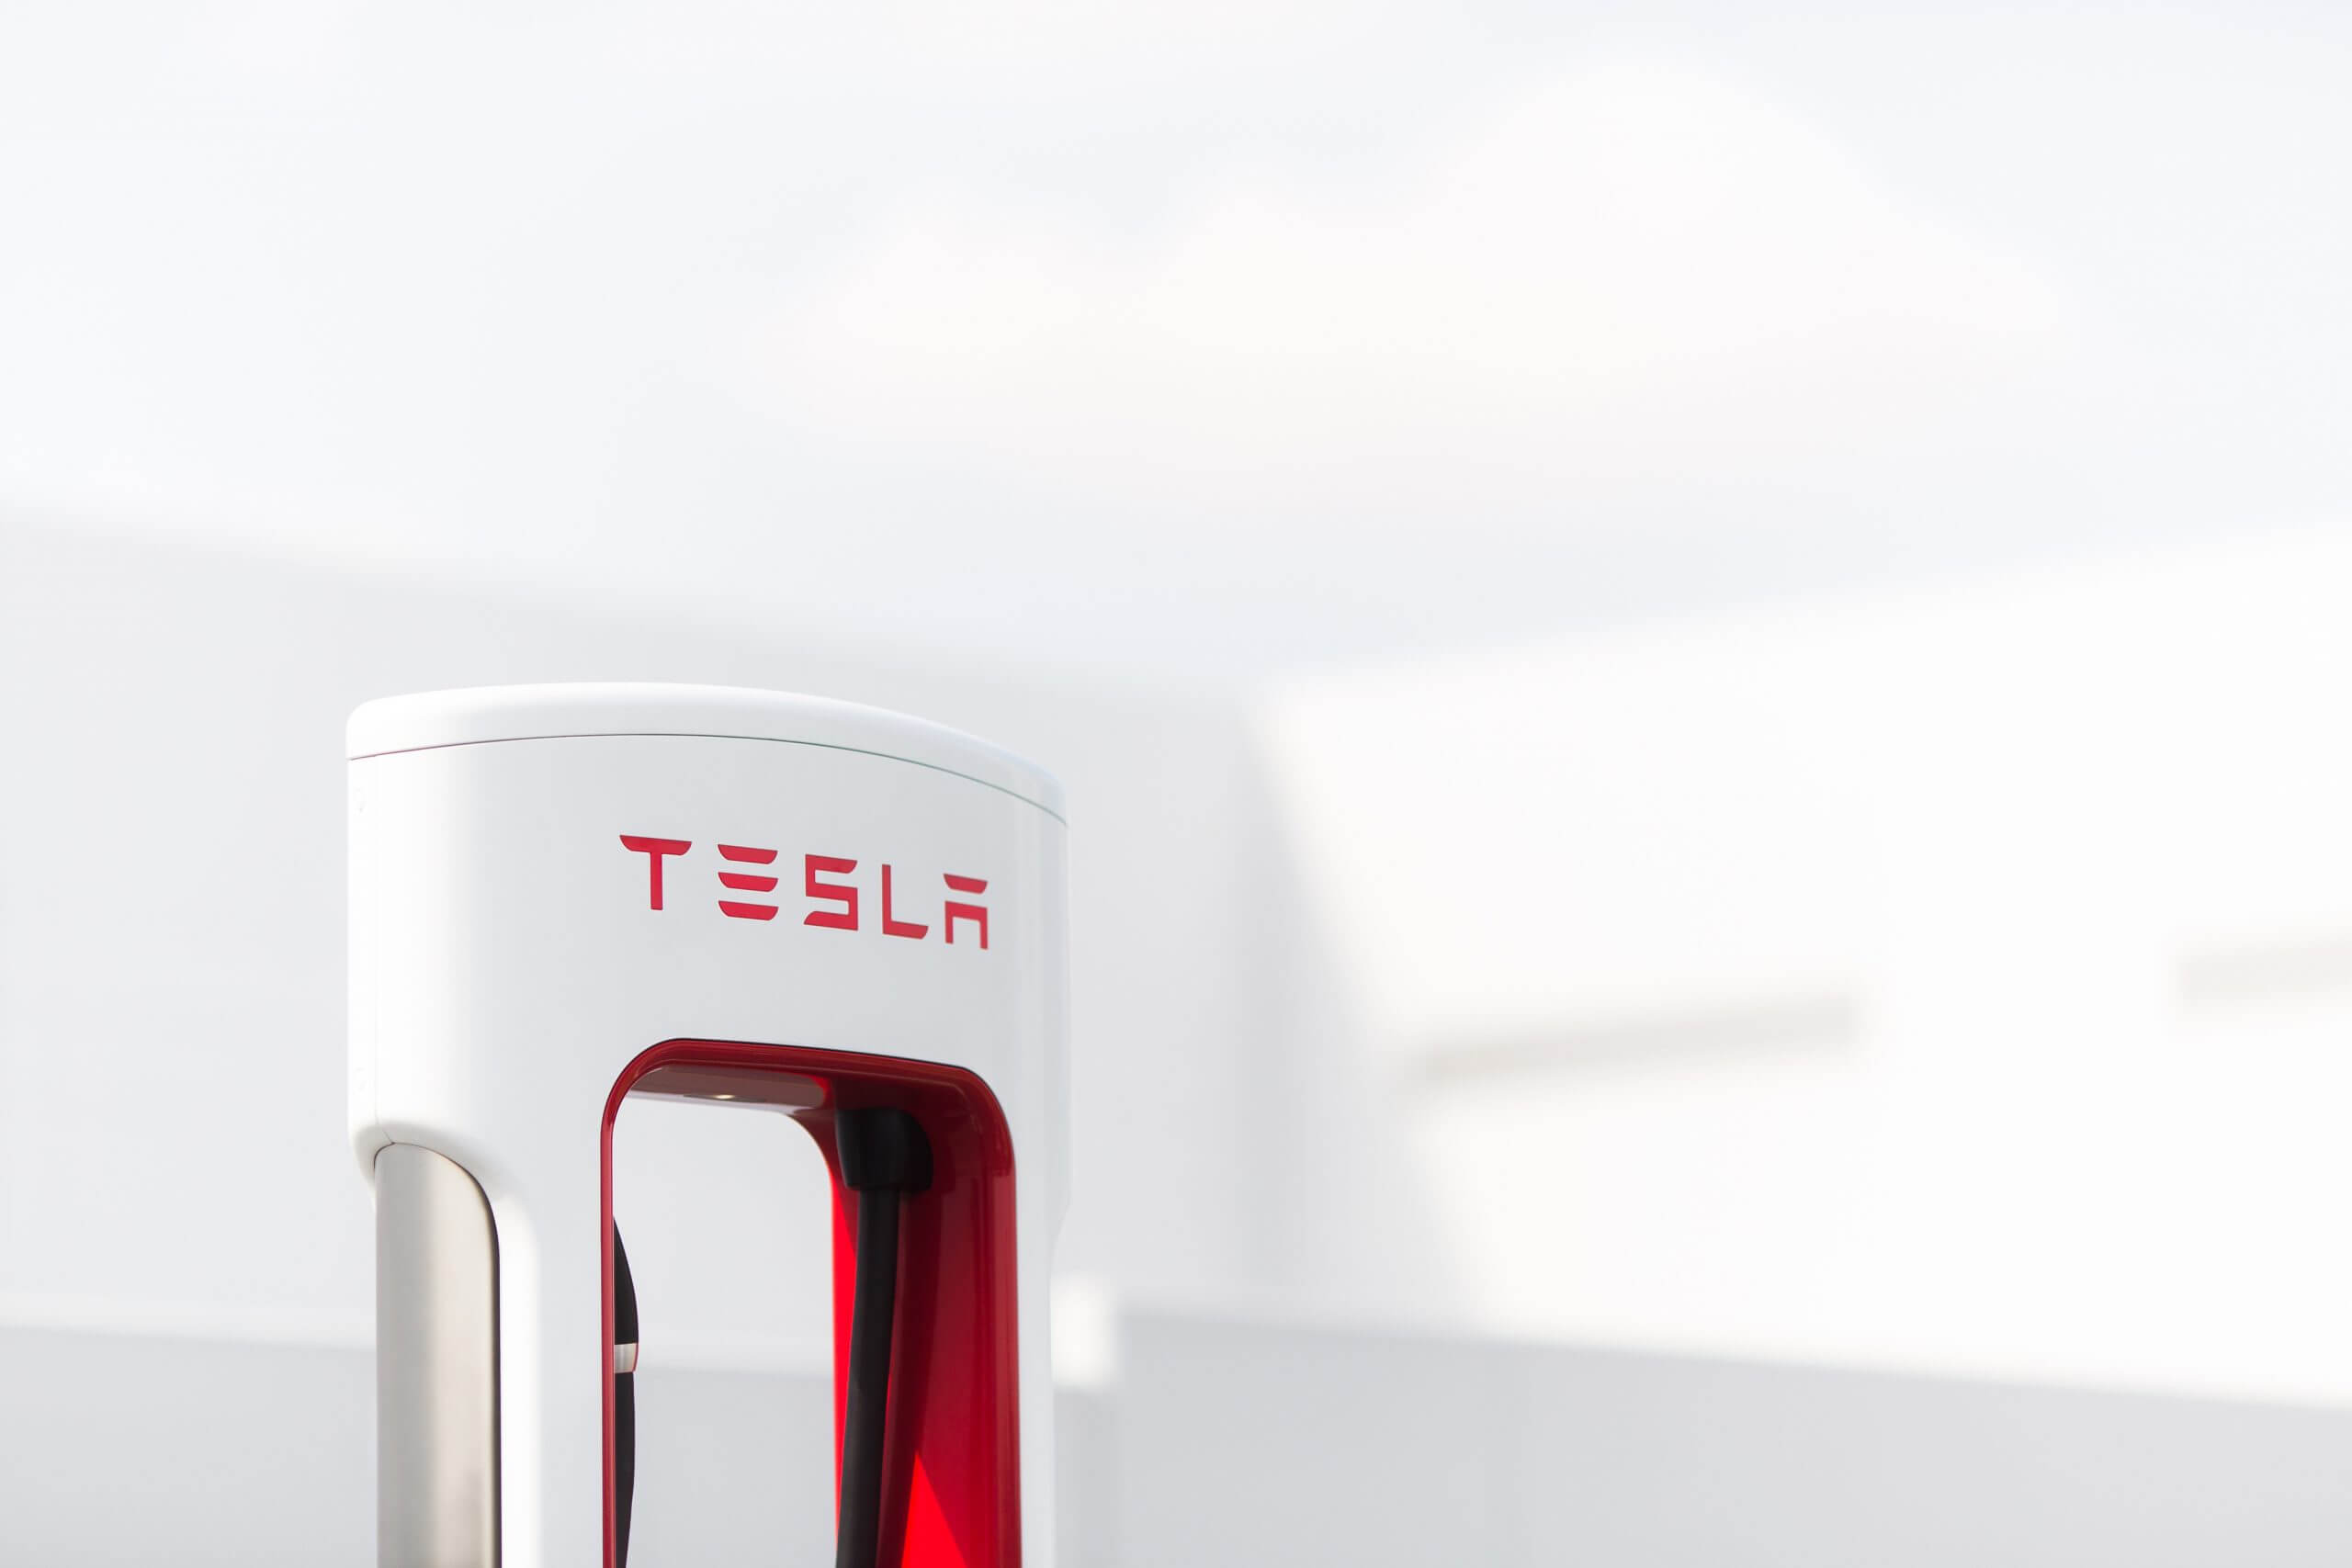 تنضم جنرال موتورز إلى شركة فورد في تبني شبكة وموصل Tesla Supercharger